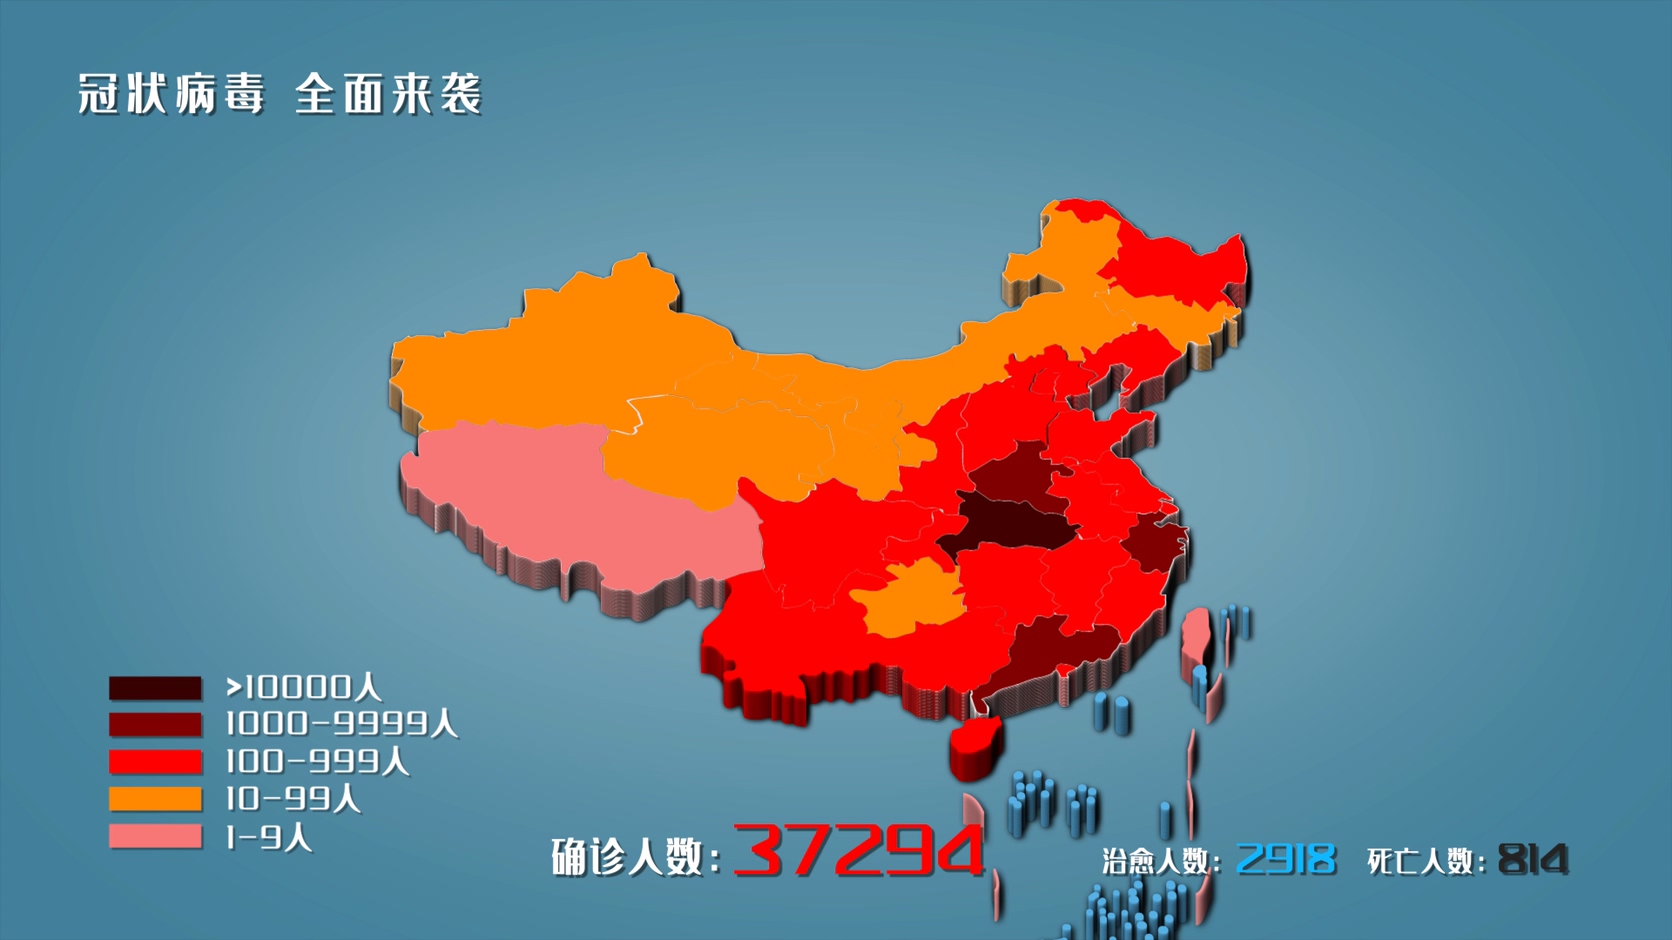 武汉冠状病毒疫情地图视频素材